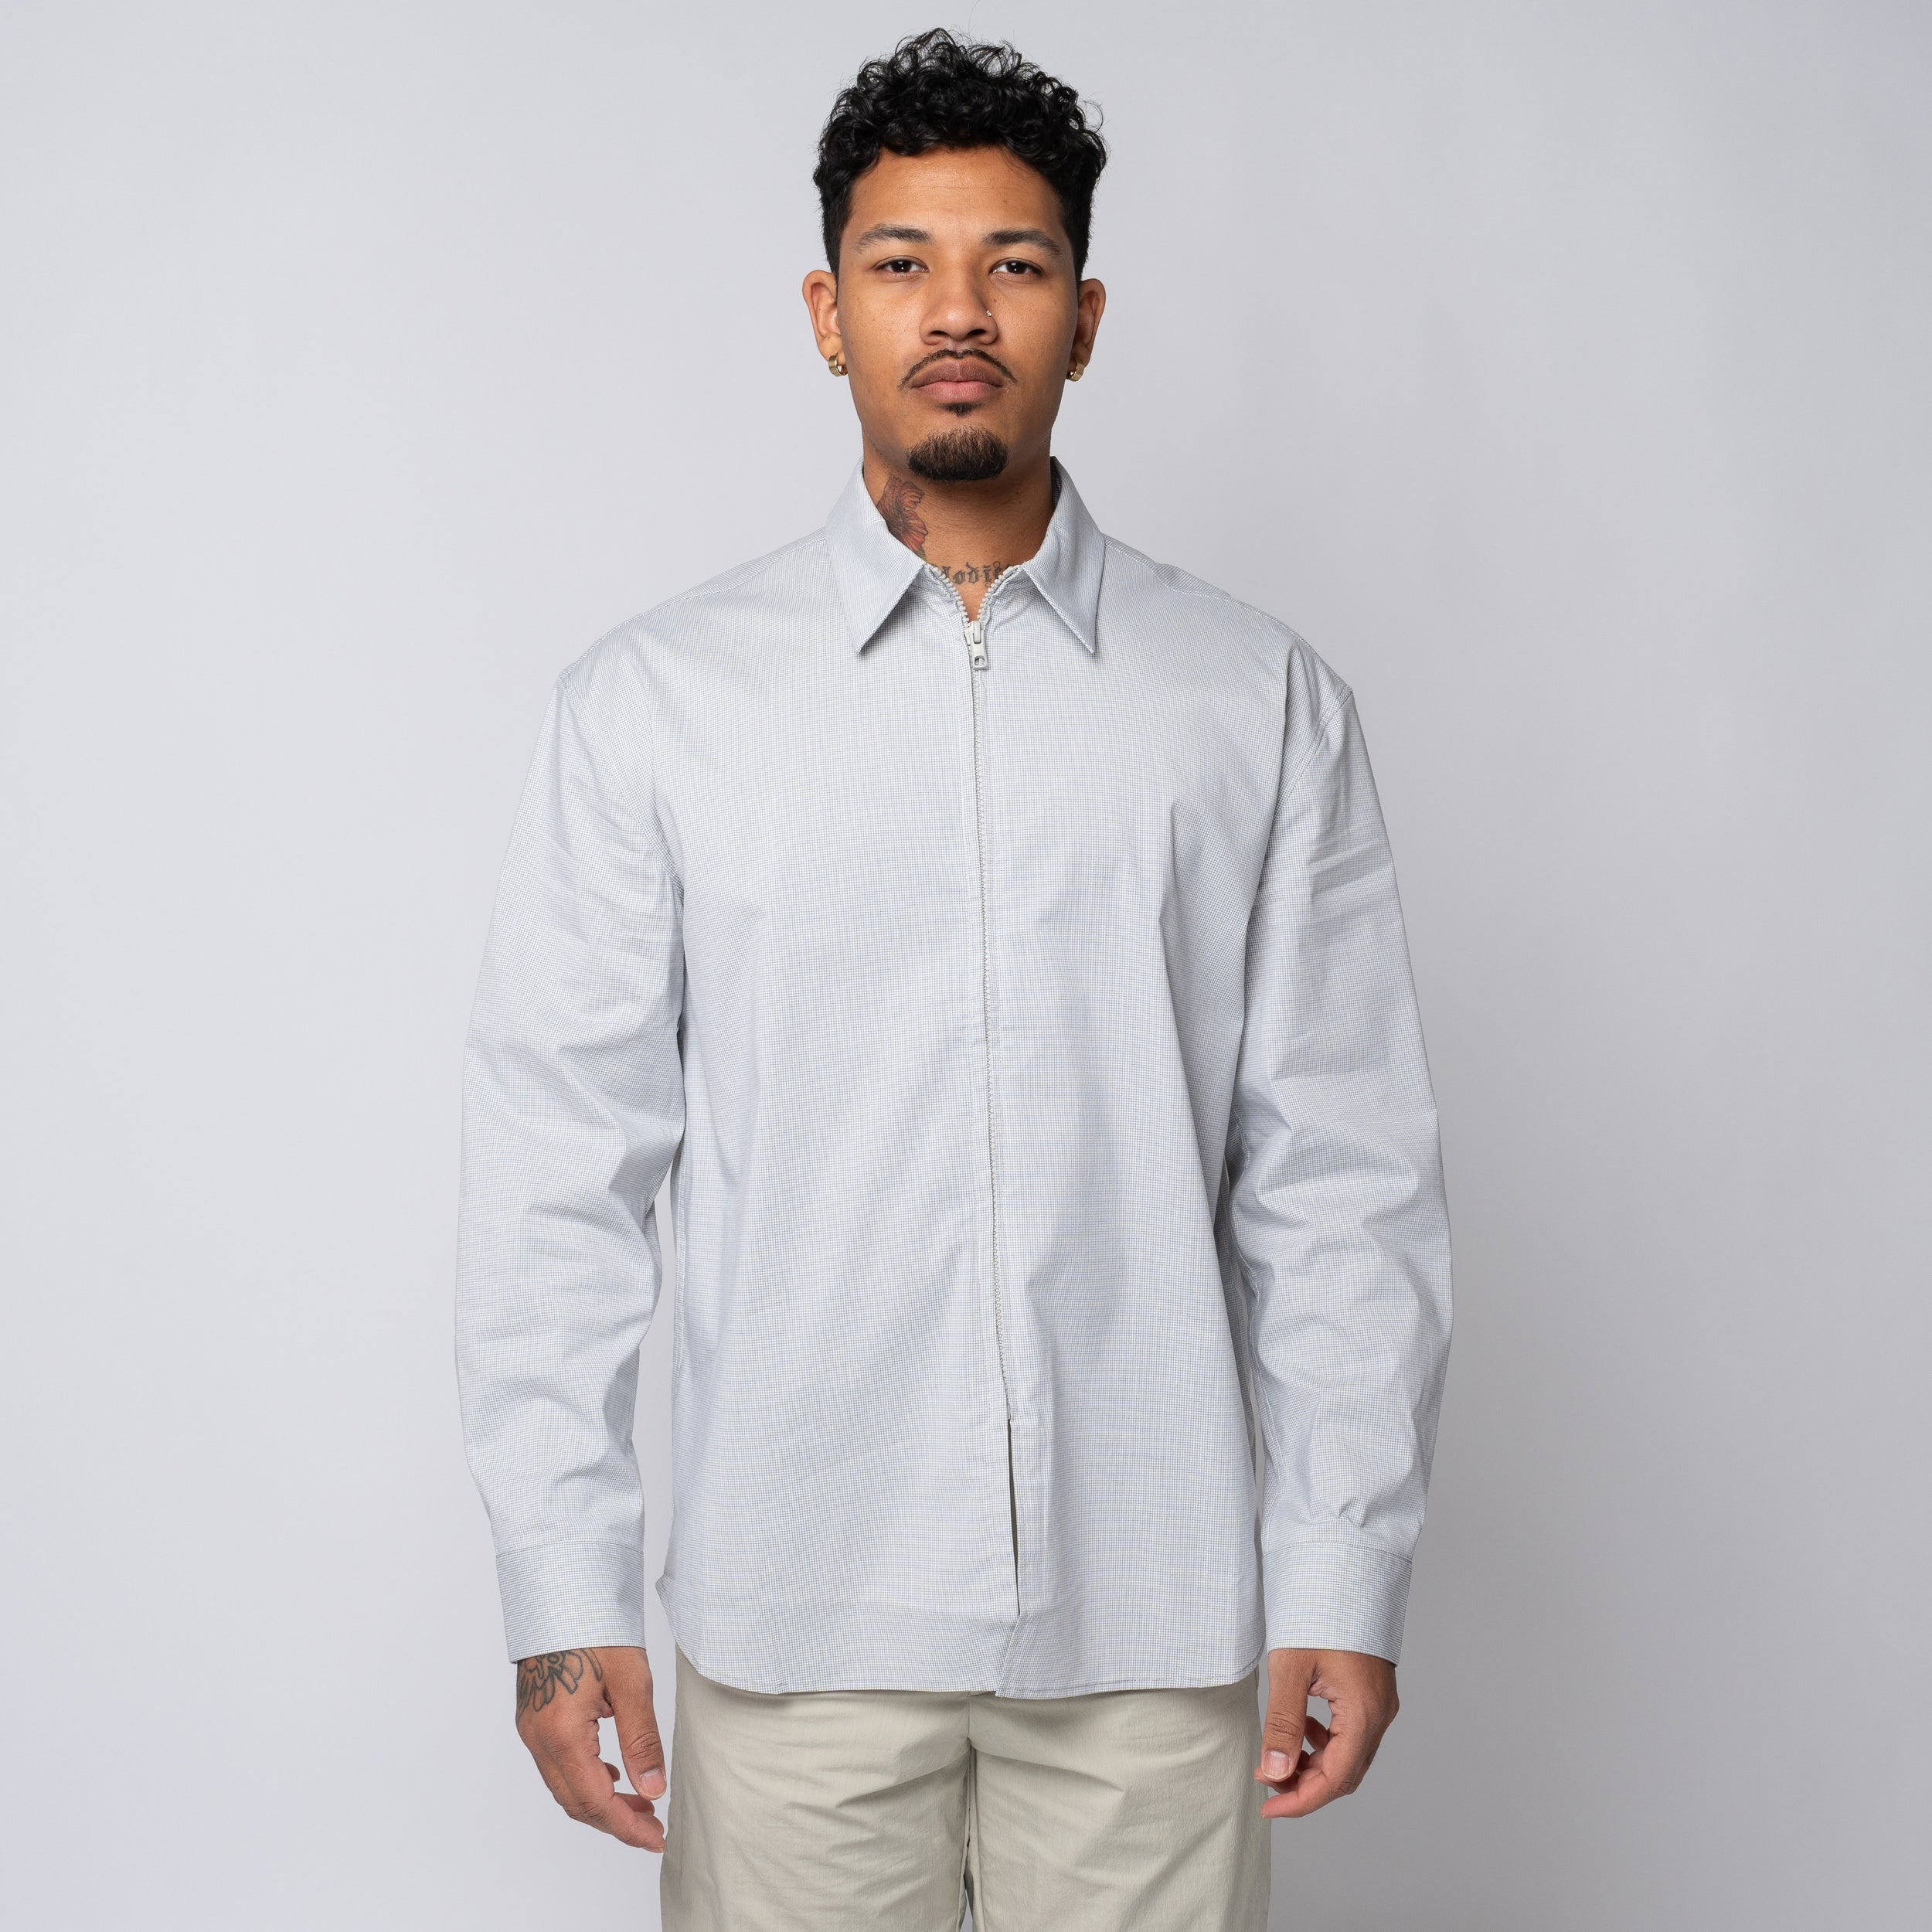 PAF 6.0 Shirt Right Light Grey 60TSRLG